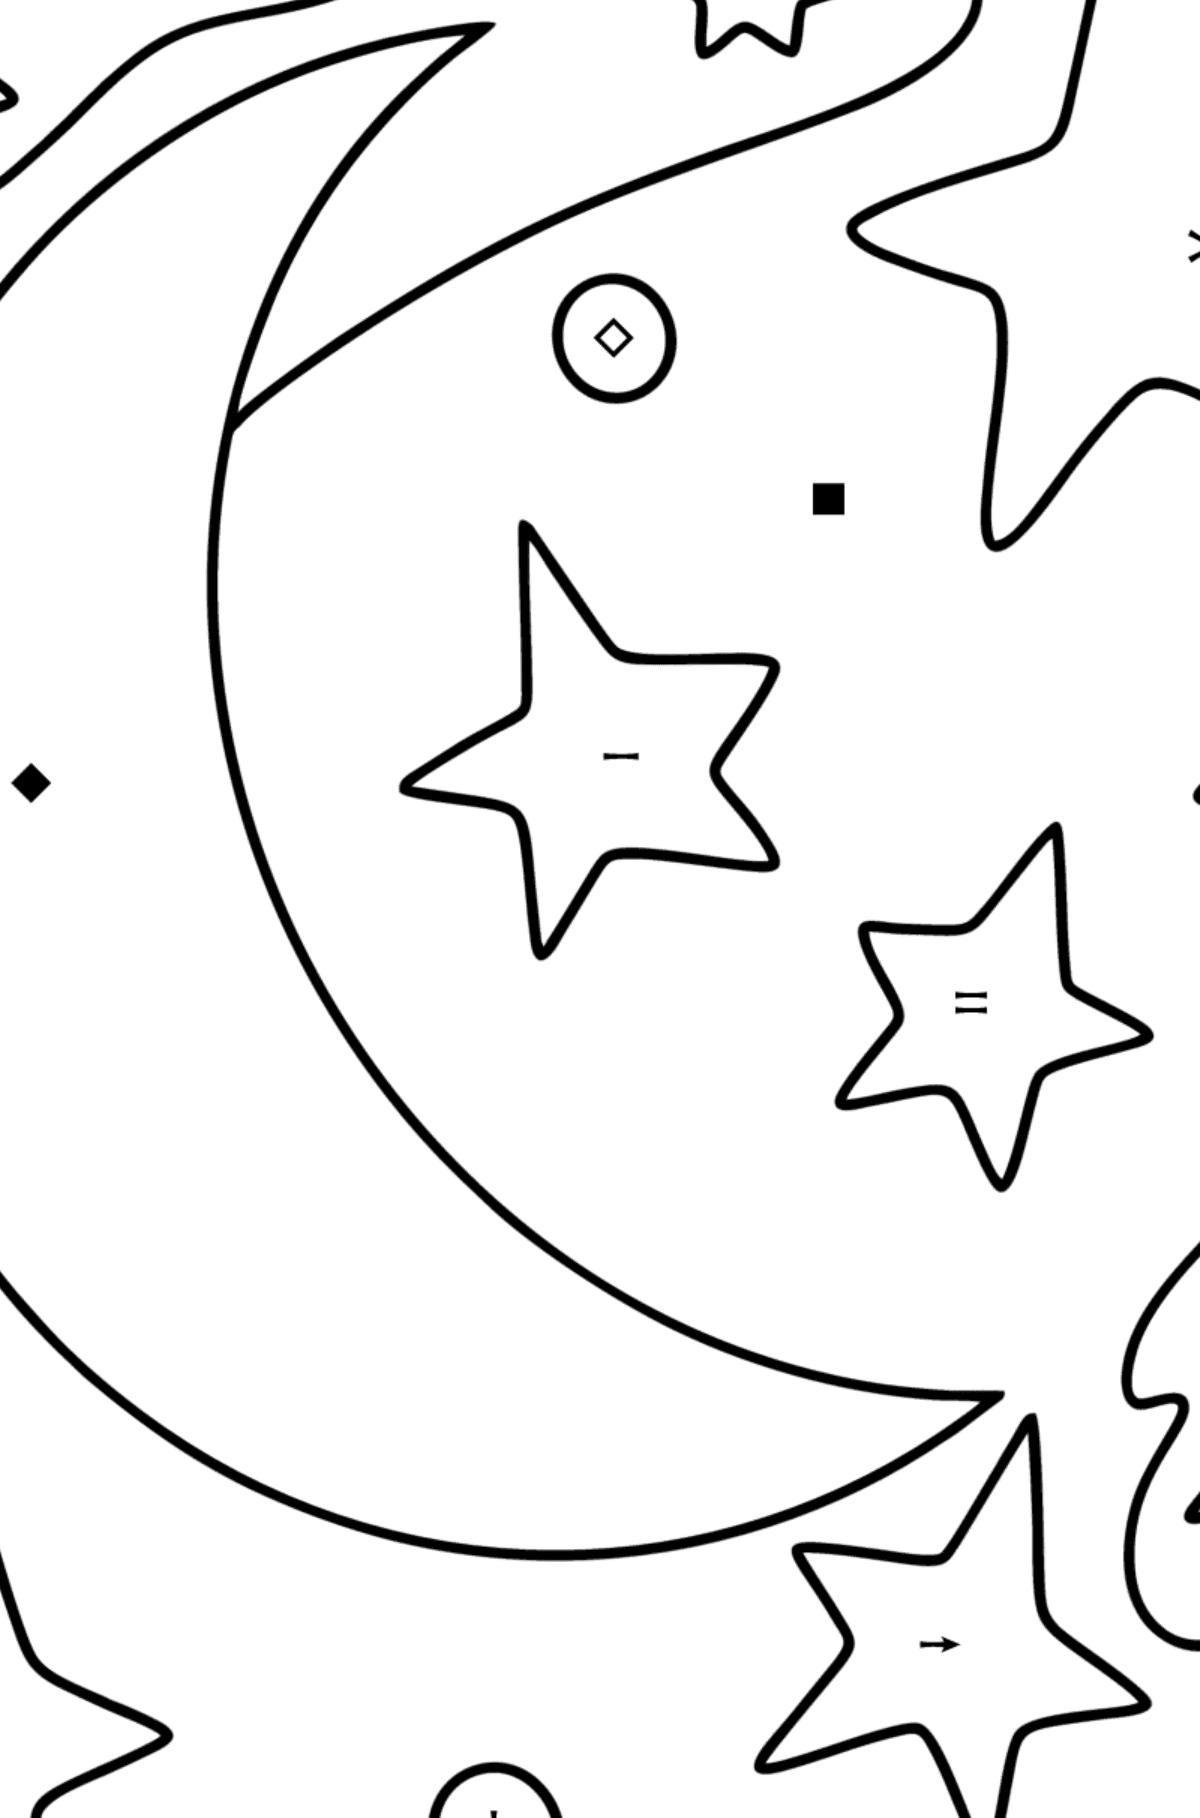 Månen og stjernene tegning til fargelegging - Fargelegge etter symboler for barn